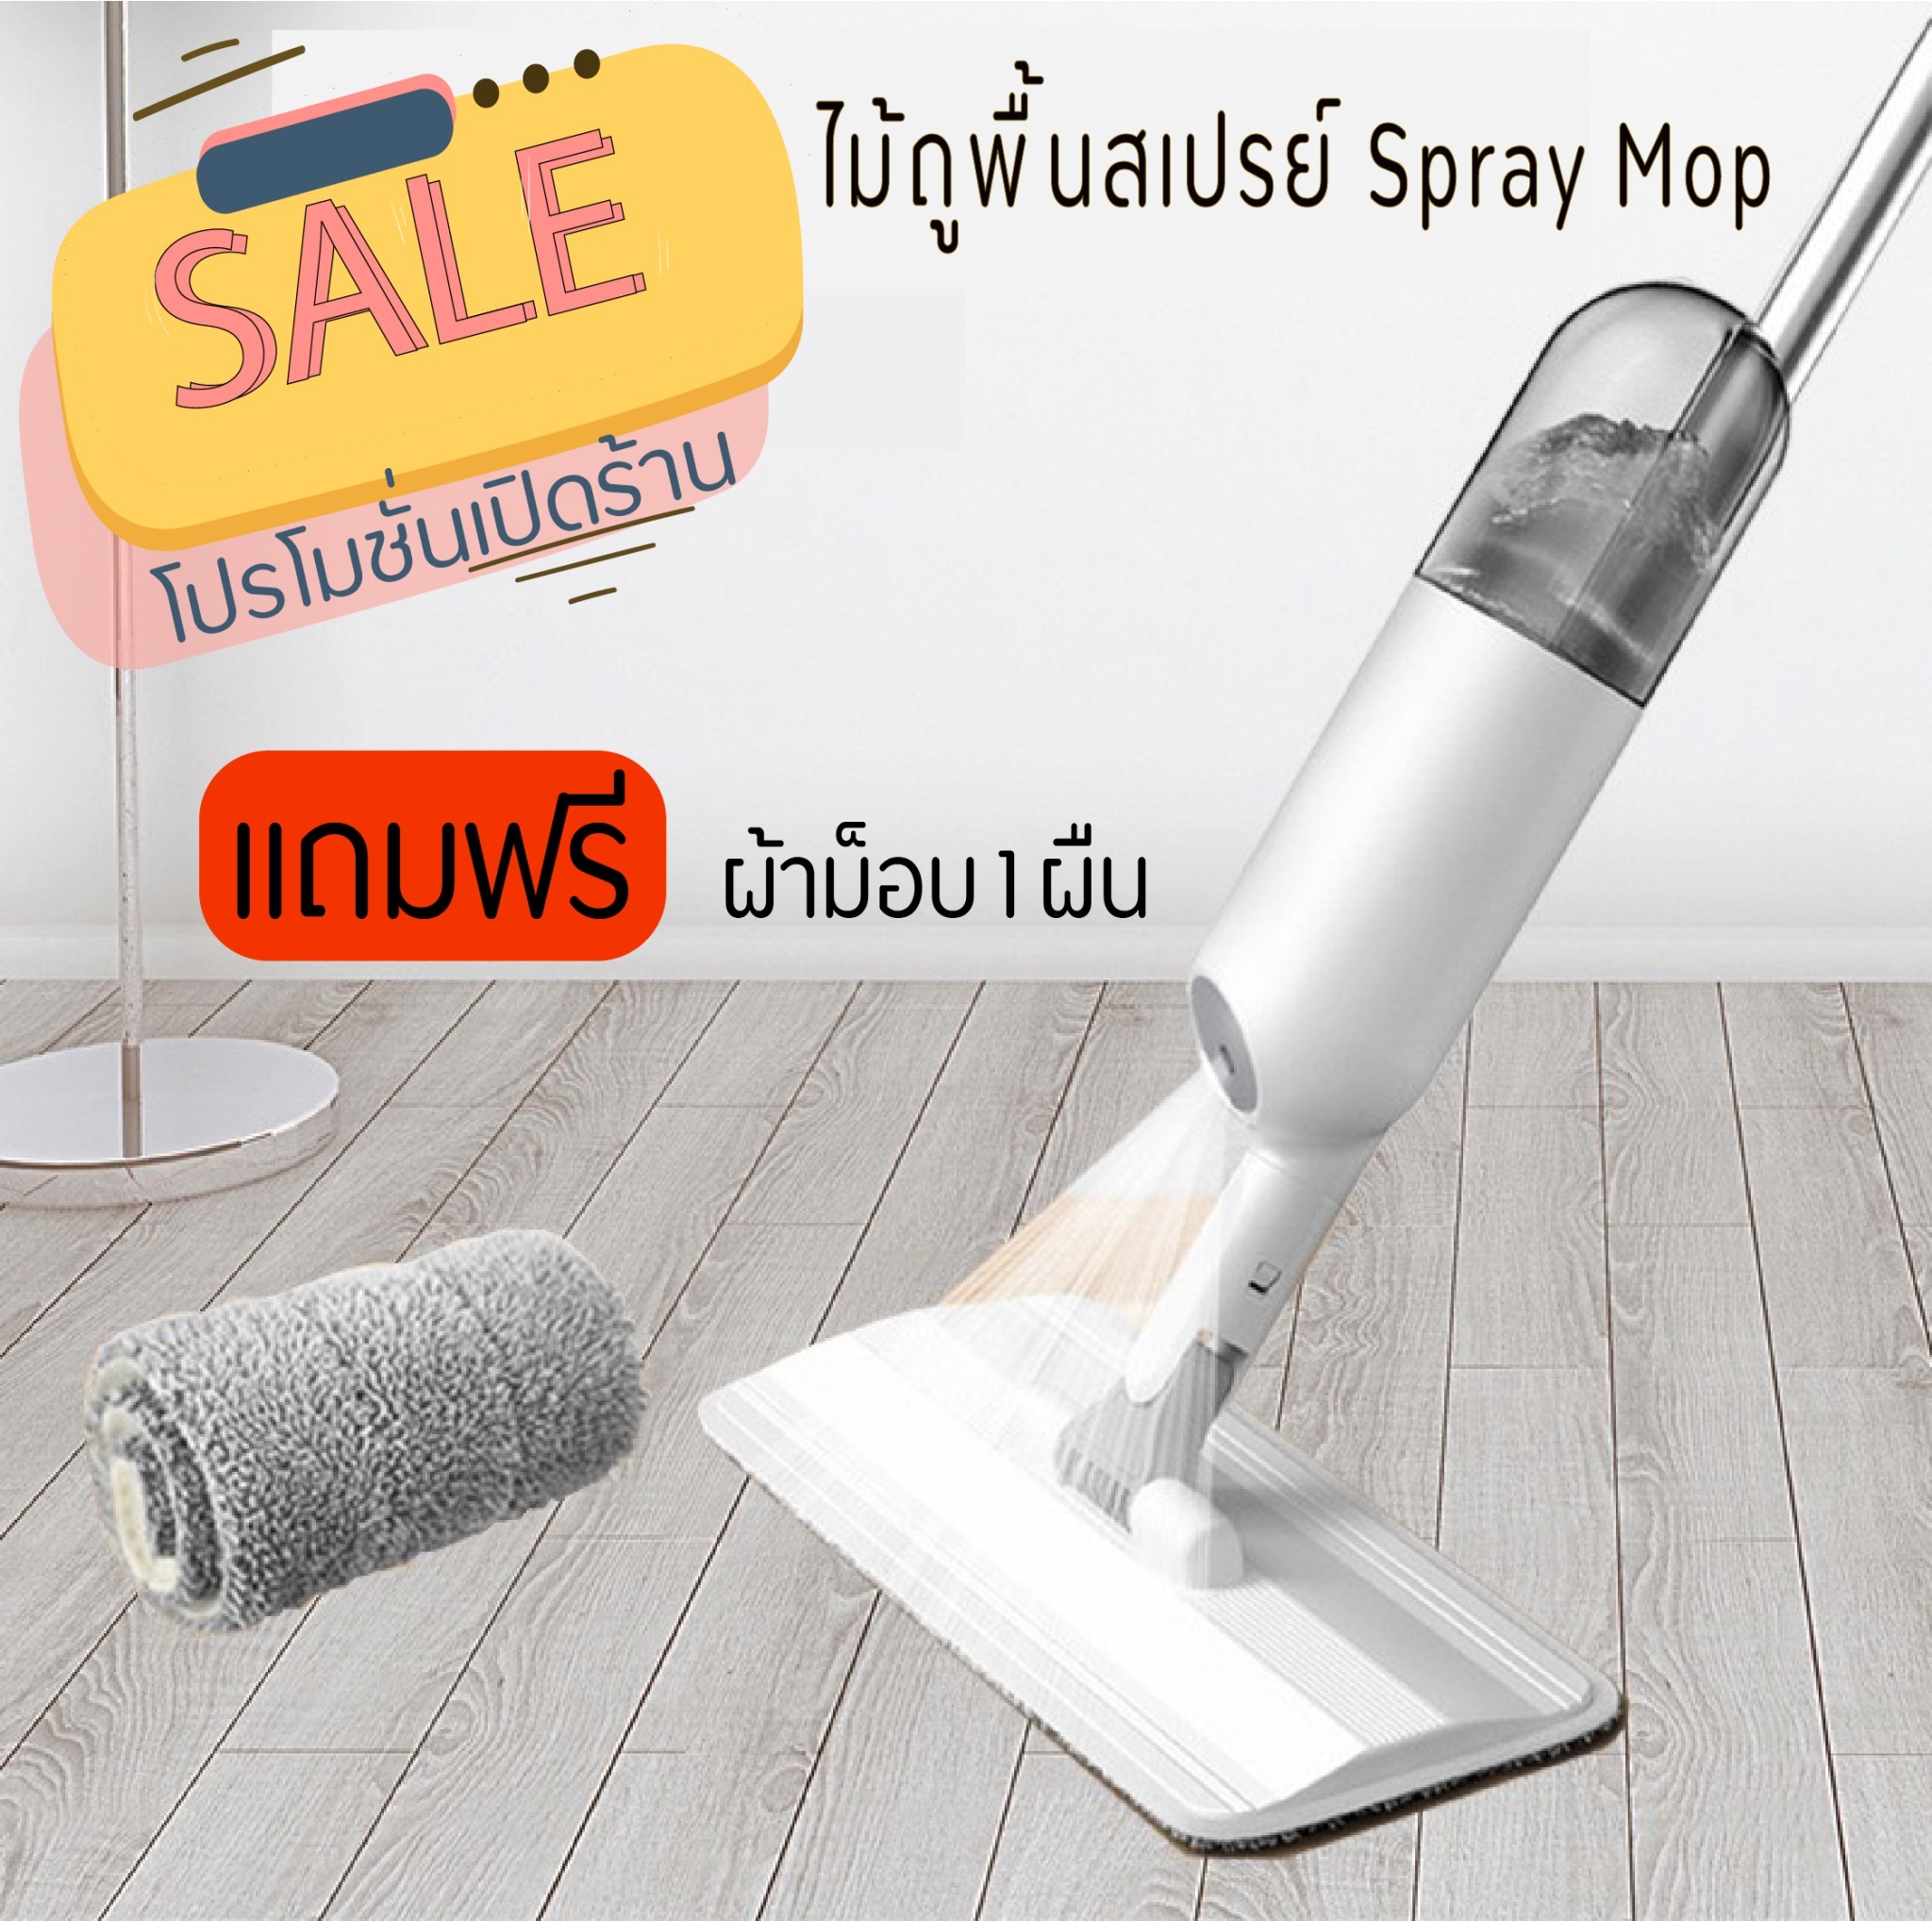 Spray Mop ไม้ถูพื้นสเปรย์ ไม้ม็อบหรือไม้ถูพื้นพร้อมฟ็อกกี้ฉีดน้ำในตัว(แถมฟรีผ้าม็อบ 1 ผืน)